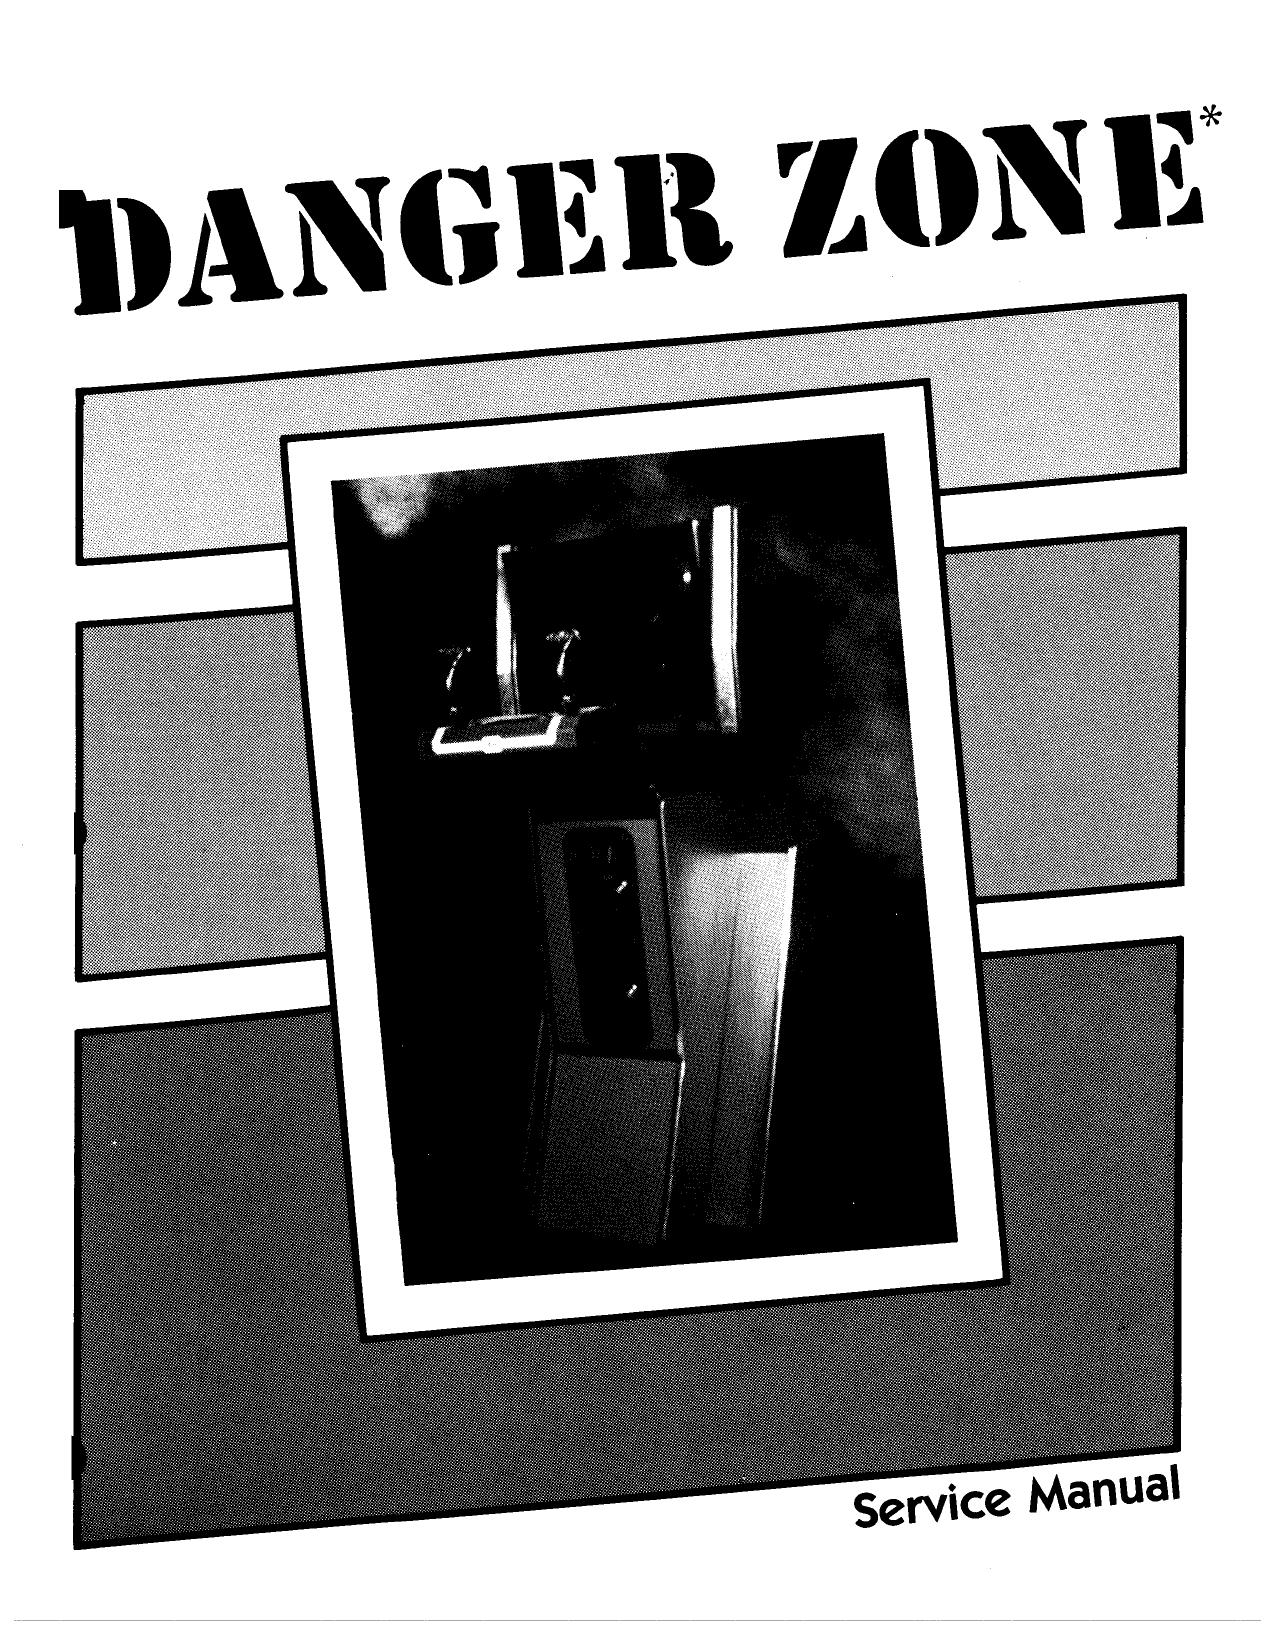 DangerZone Manual